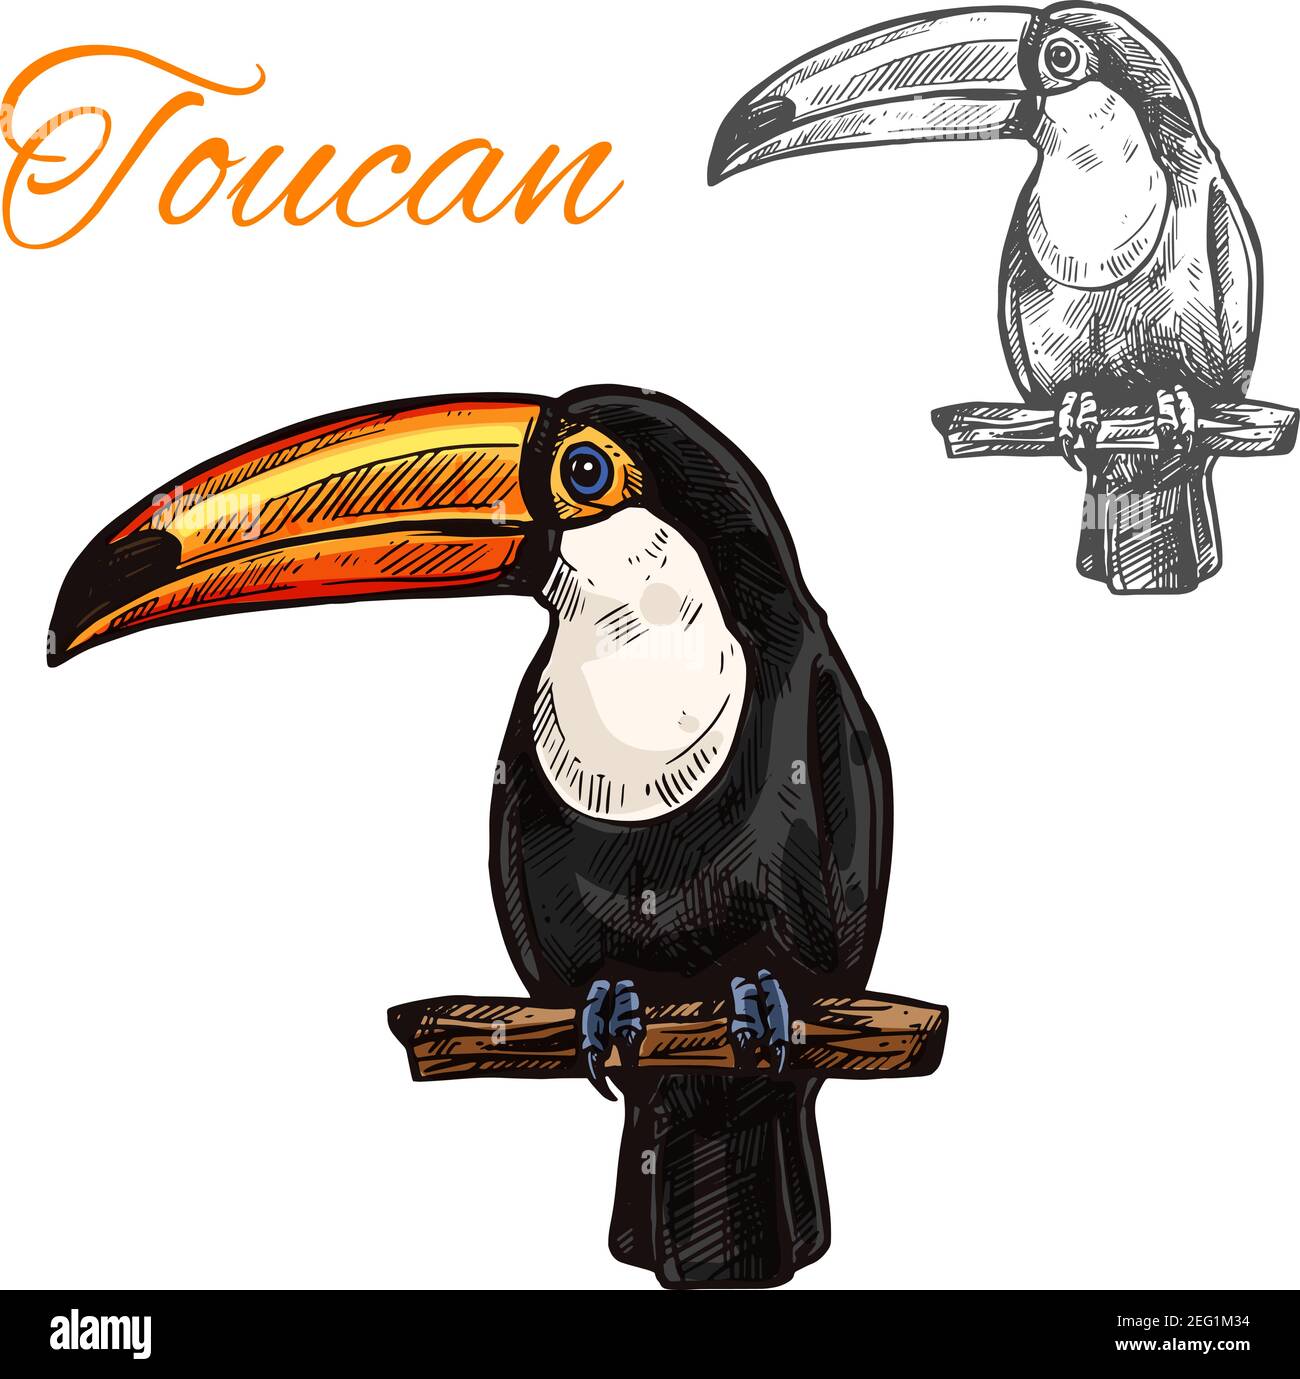 Toucan Skizze mit Vogel des tropischen Südamerikanischen Dschungels. Exotischer toco-Tukan mit schwarzem Gefieder, weißer Brust und gelbem Schnabel auf Ast-Symbol f Stock Vektor